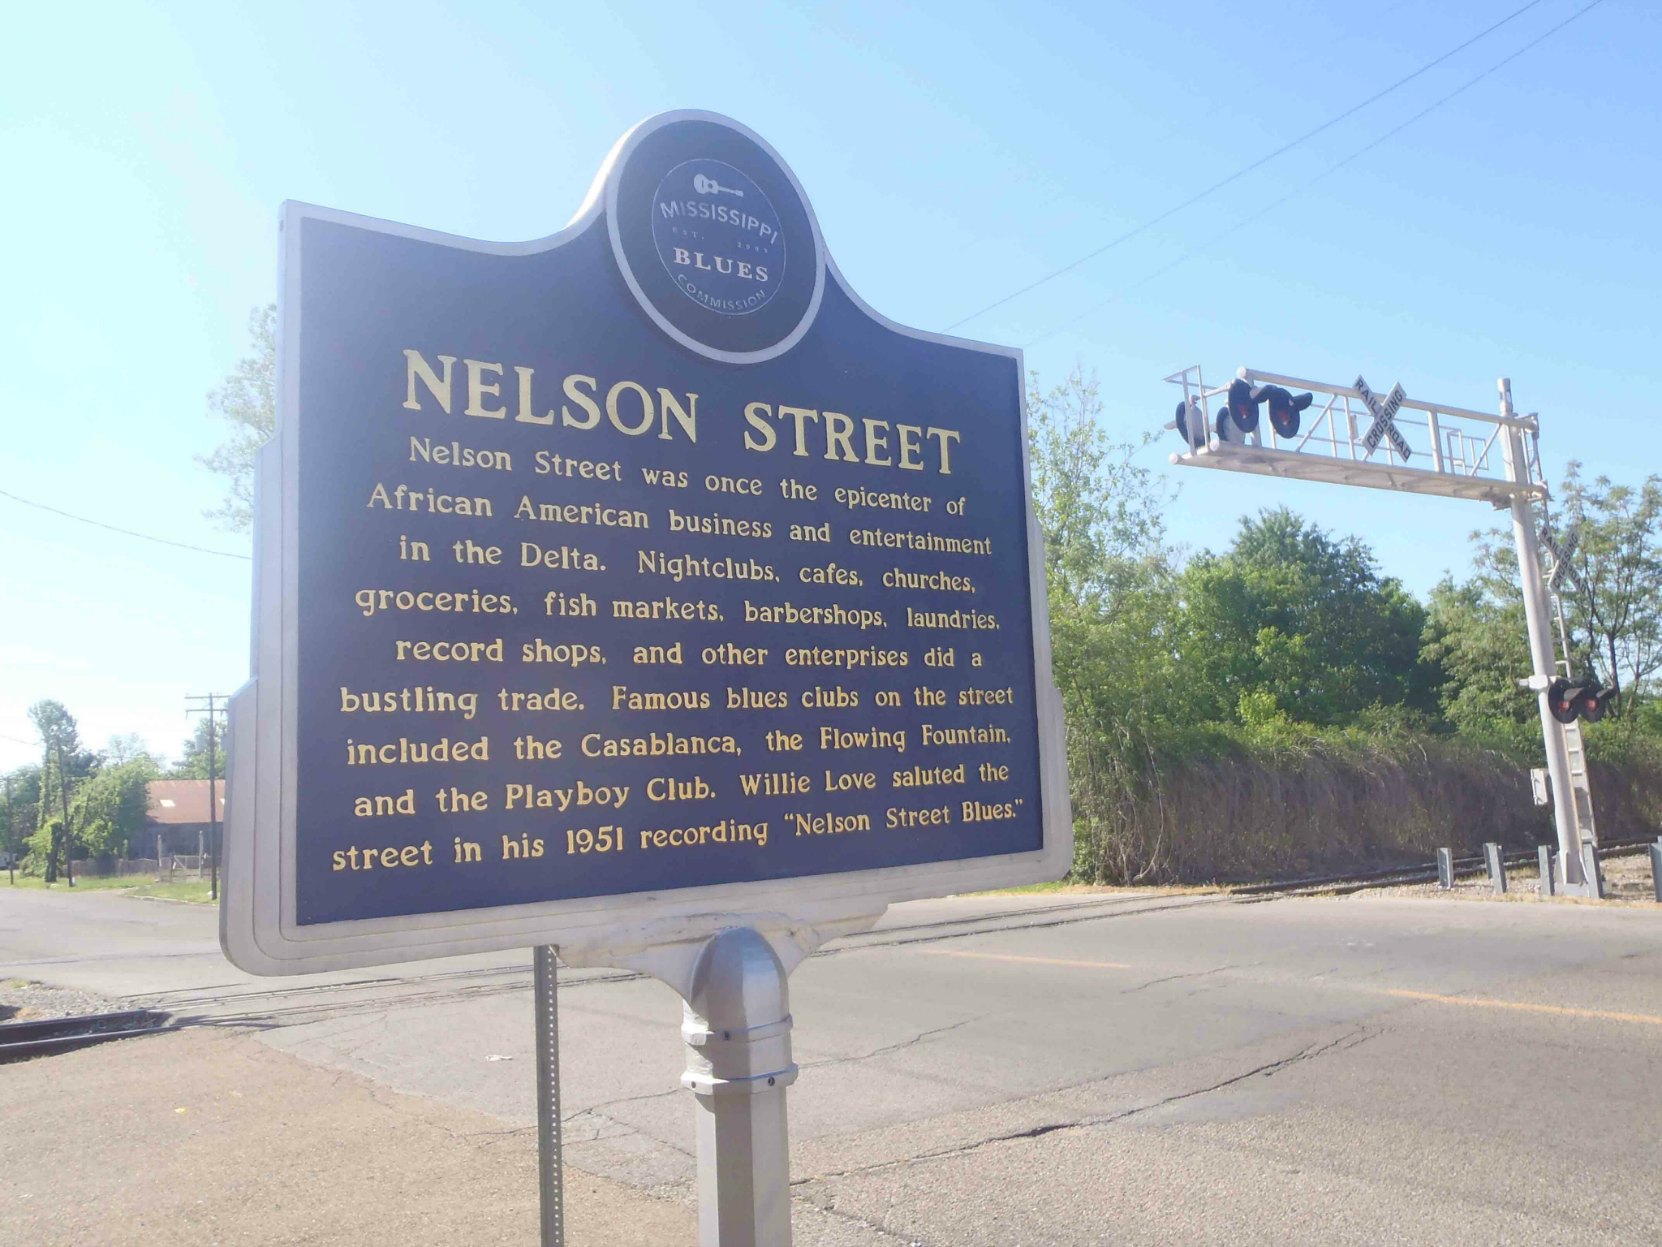 Mississippi Blues Trail marker for Nelson Street, Greenville, Mississippi